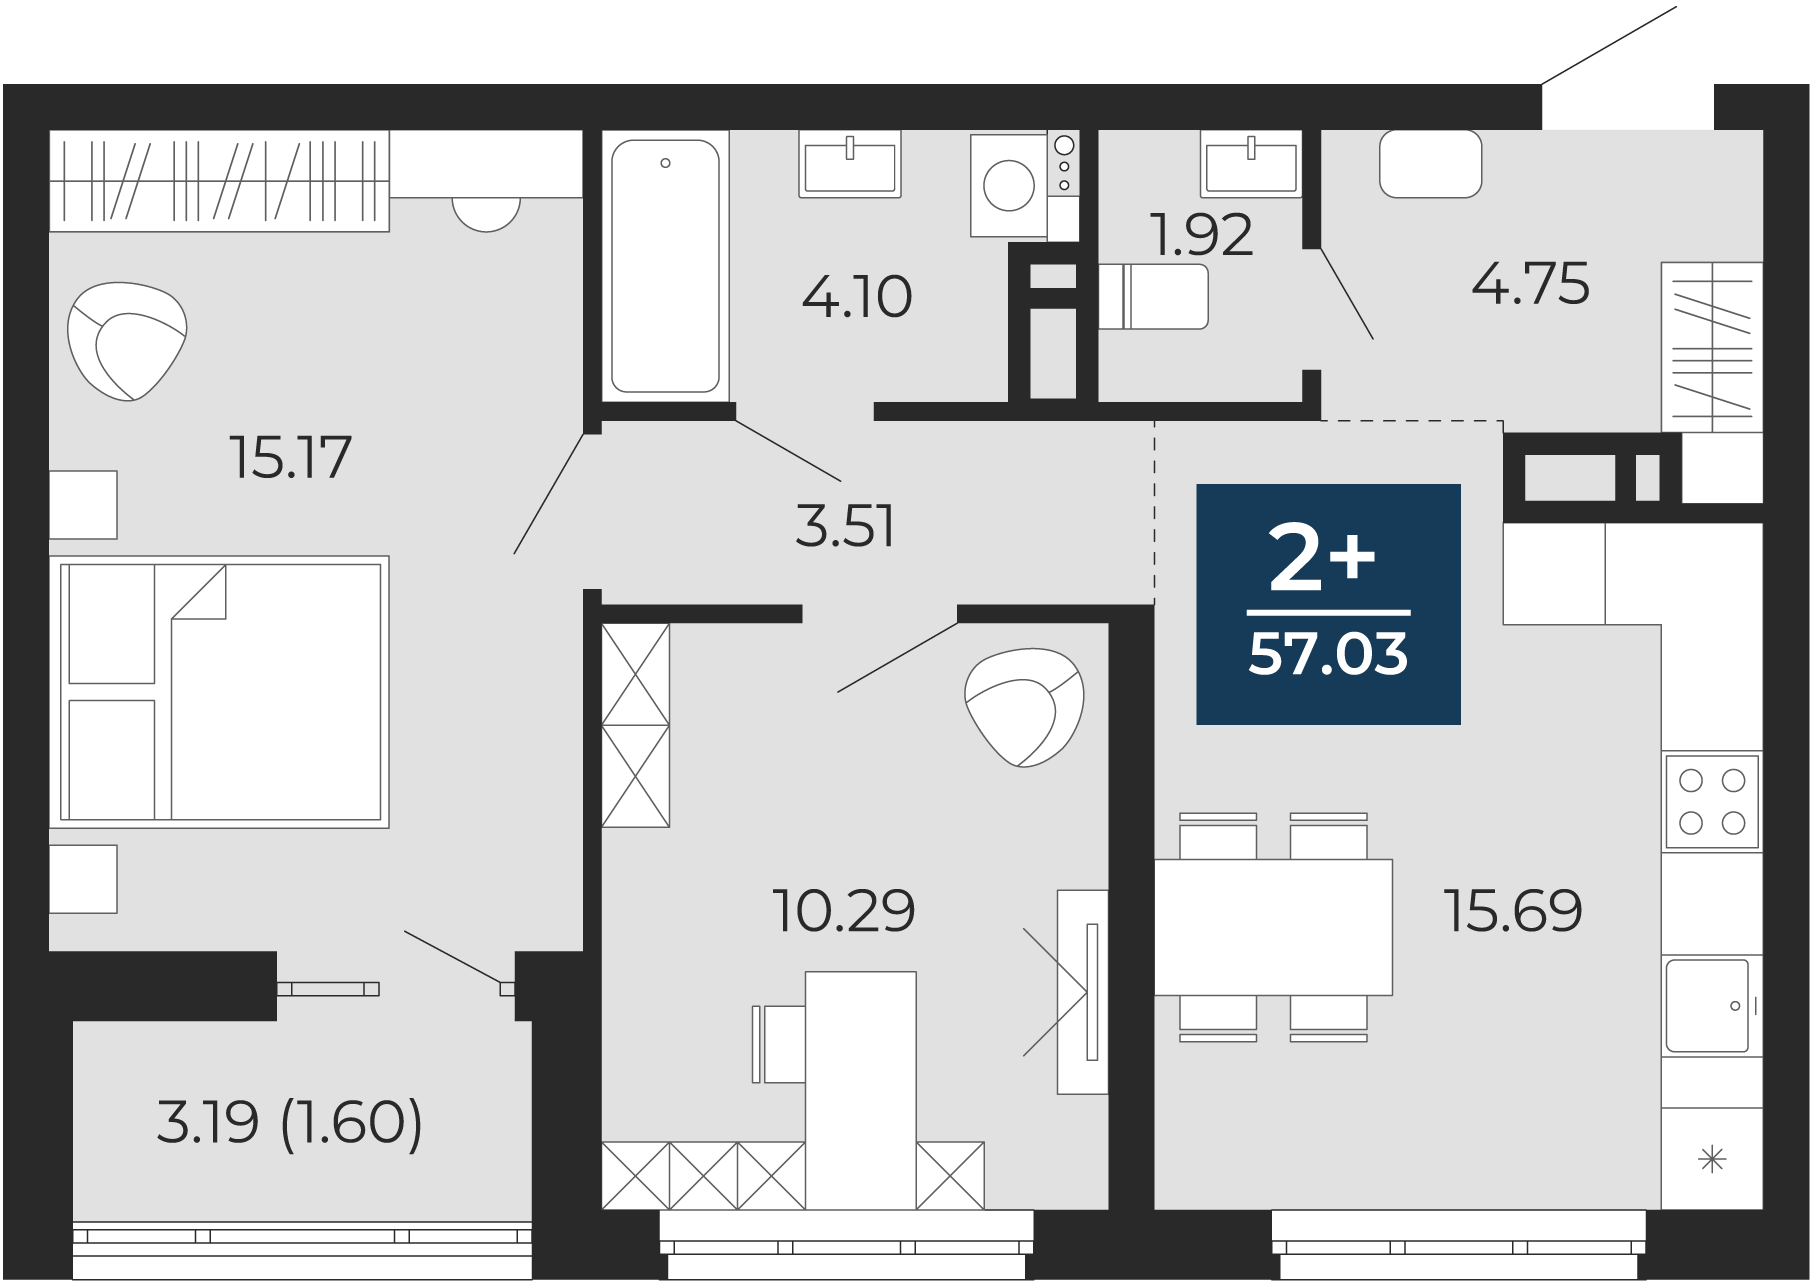 Квартира № 419, 2-комнатная, 57.03 кв. м, 13 этаж